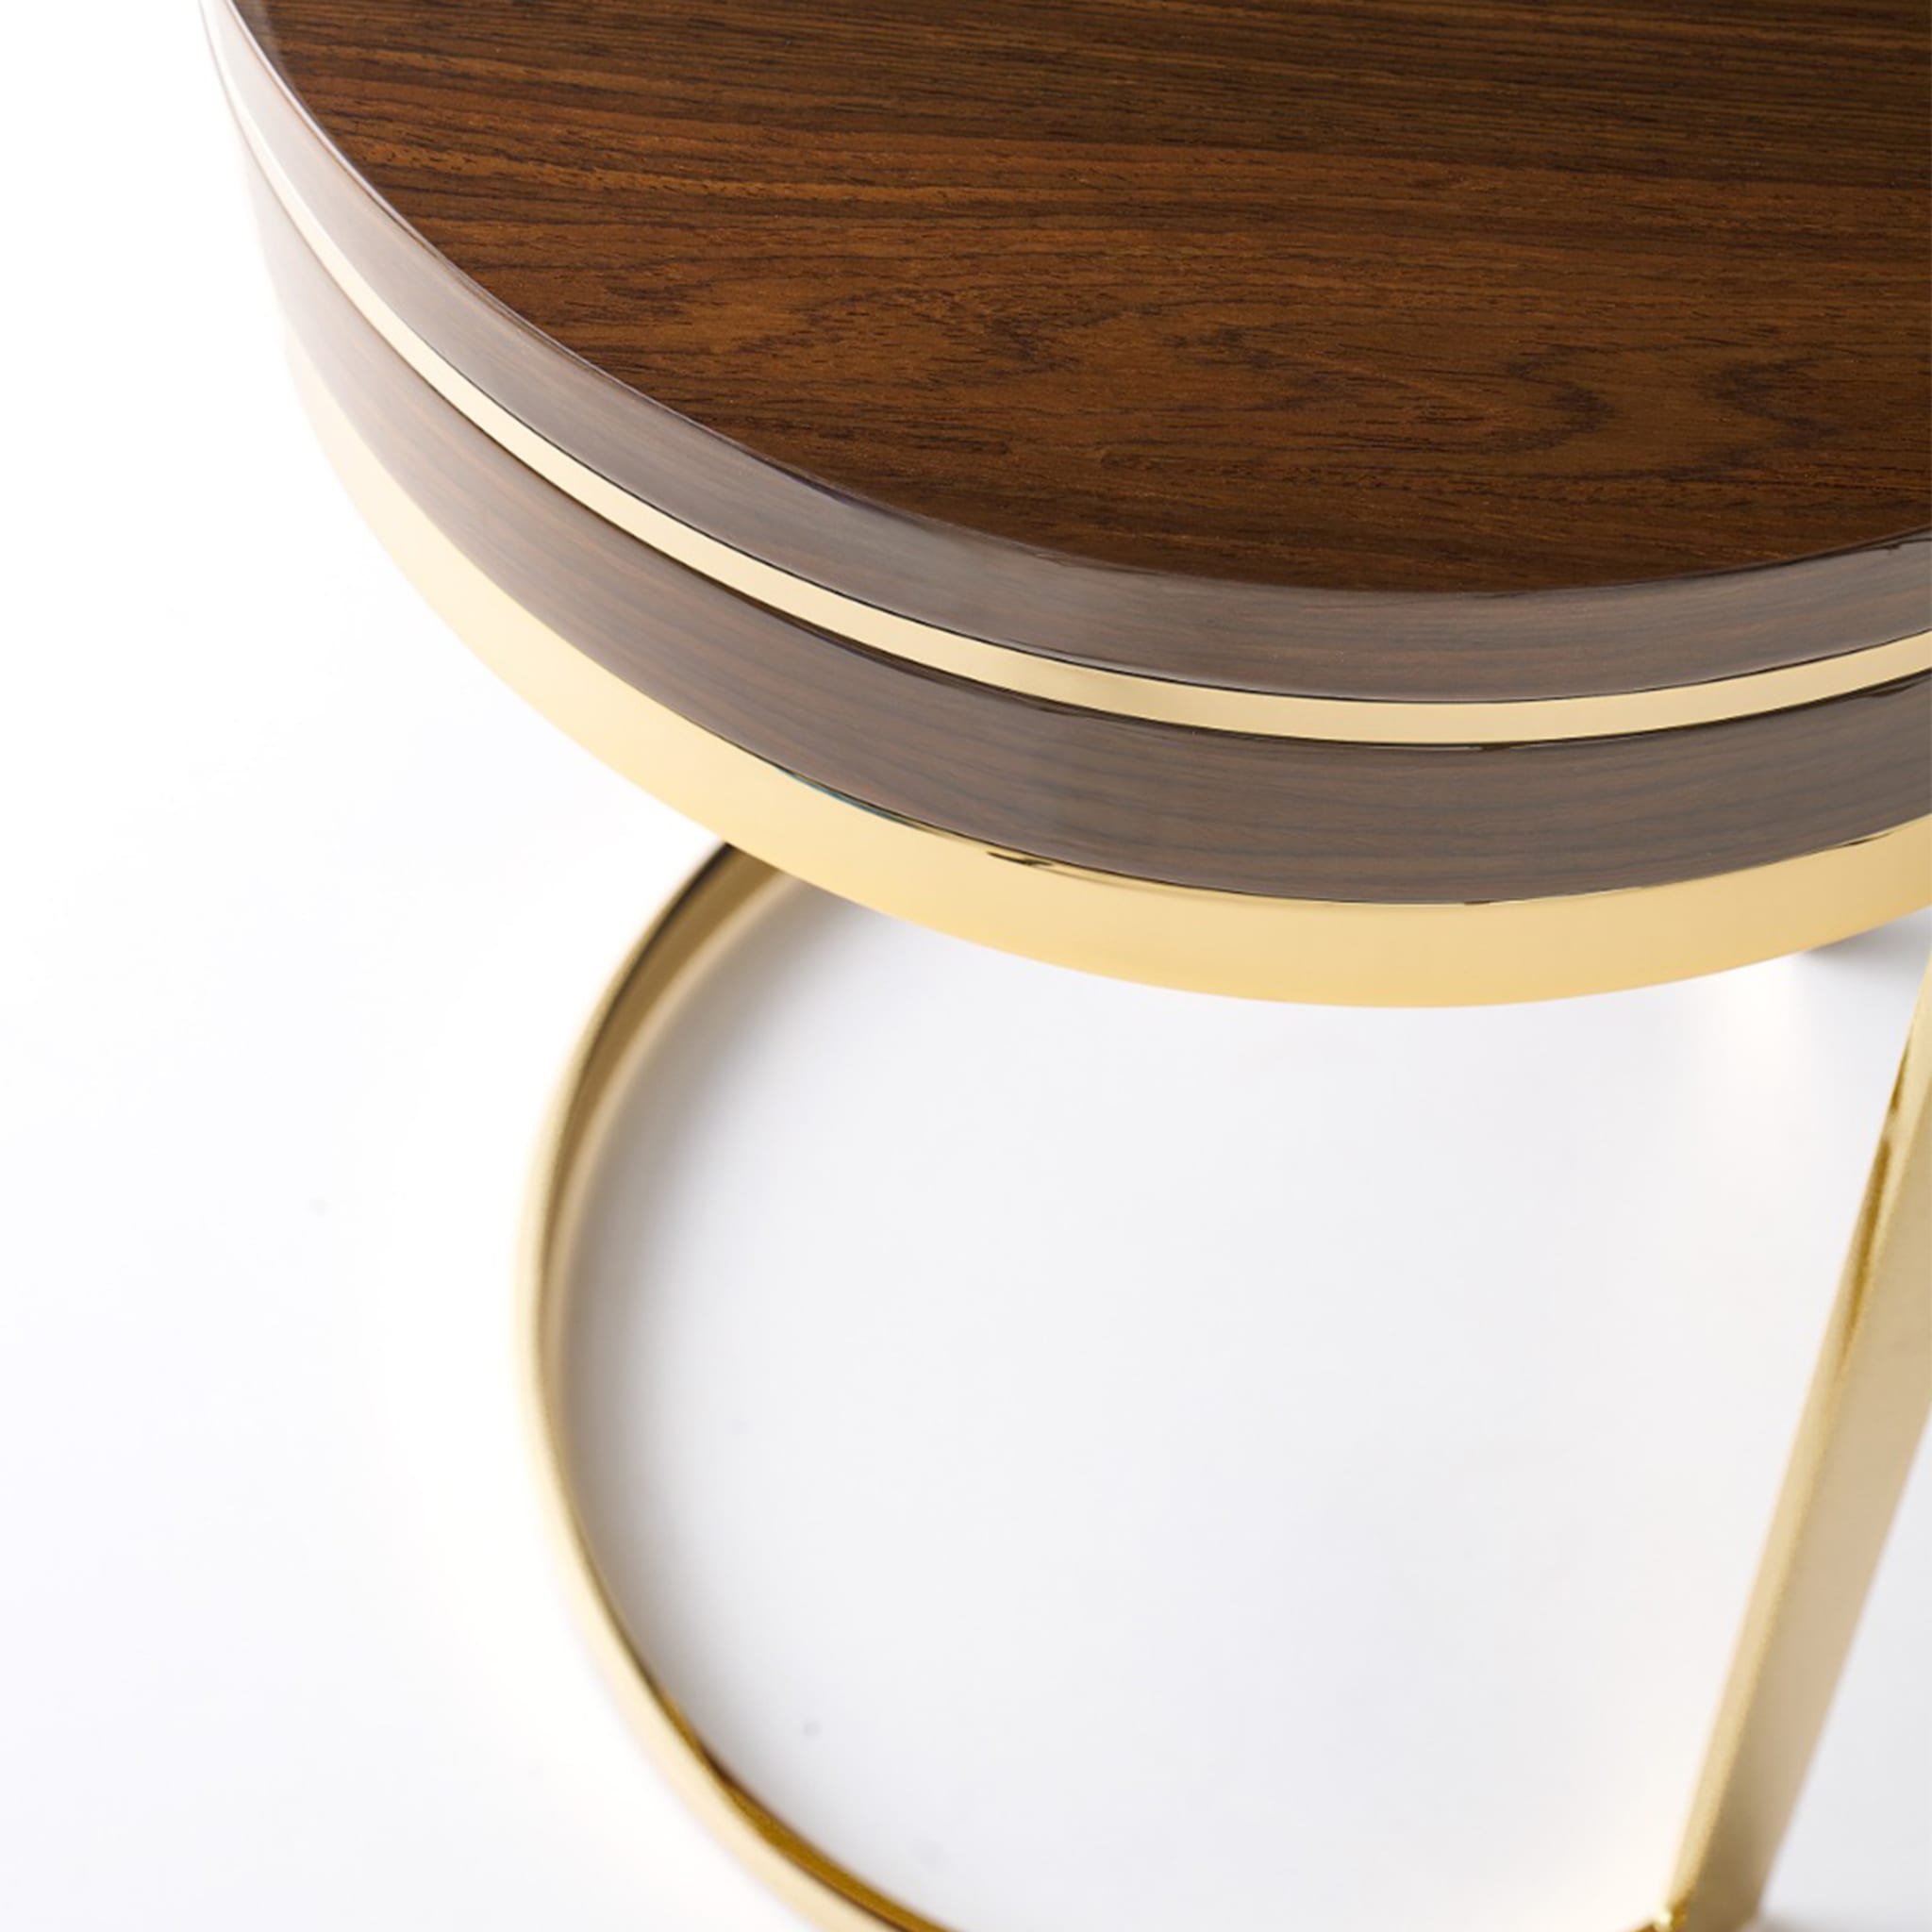 Topazio Round Golden & Walnut Side Table - Alternative view 2